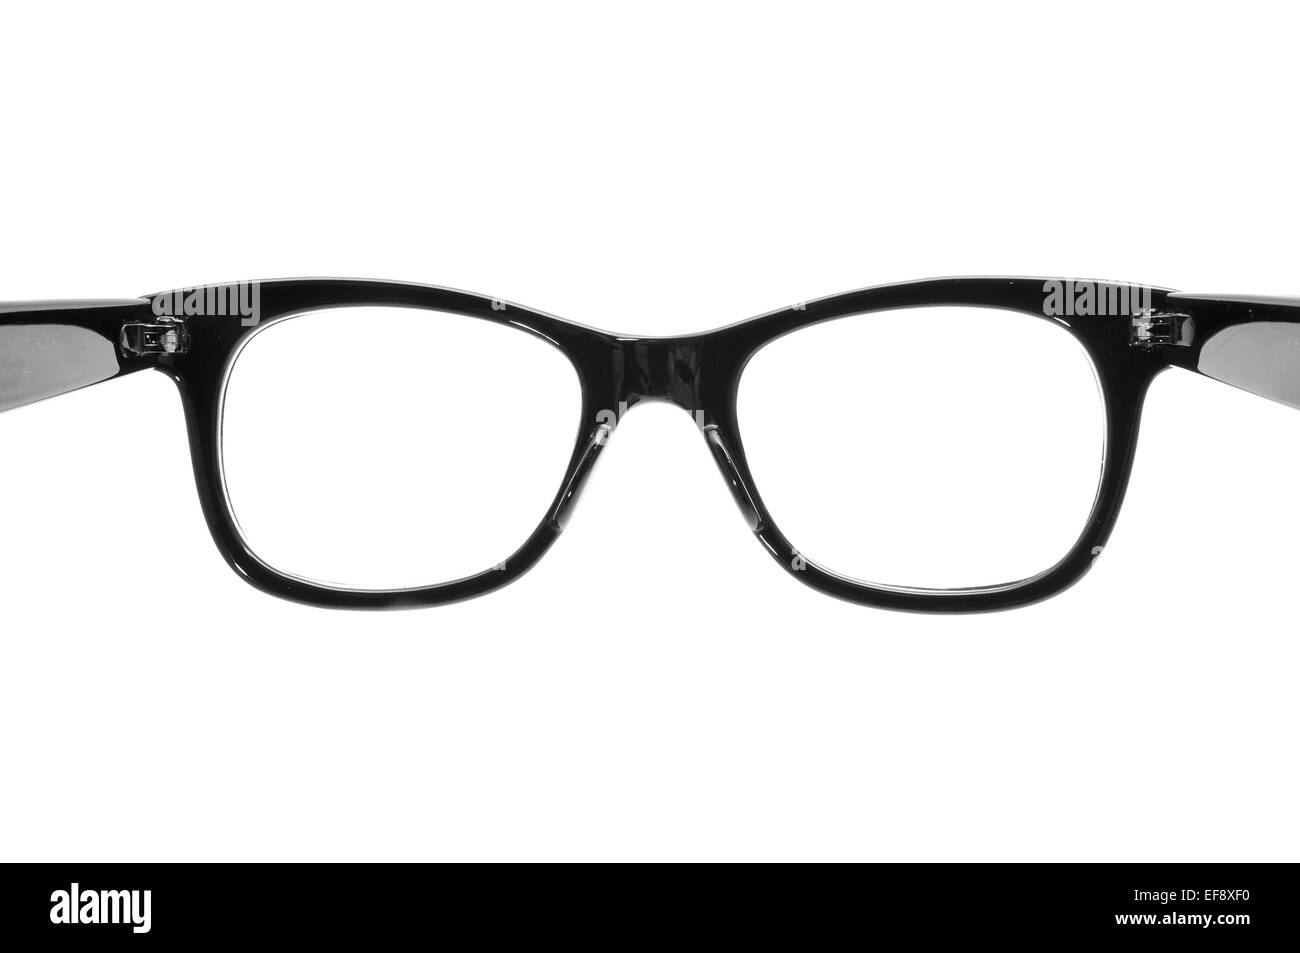 Primo piano di una plastica nera occhiali bordati su uno sfondo bianco, aperta come l'azione di metterle su Foto Stock